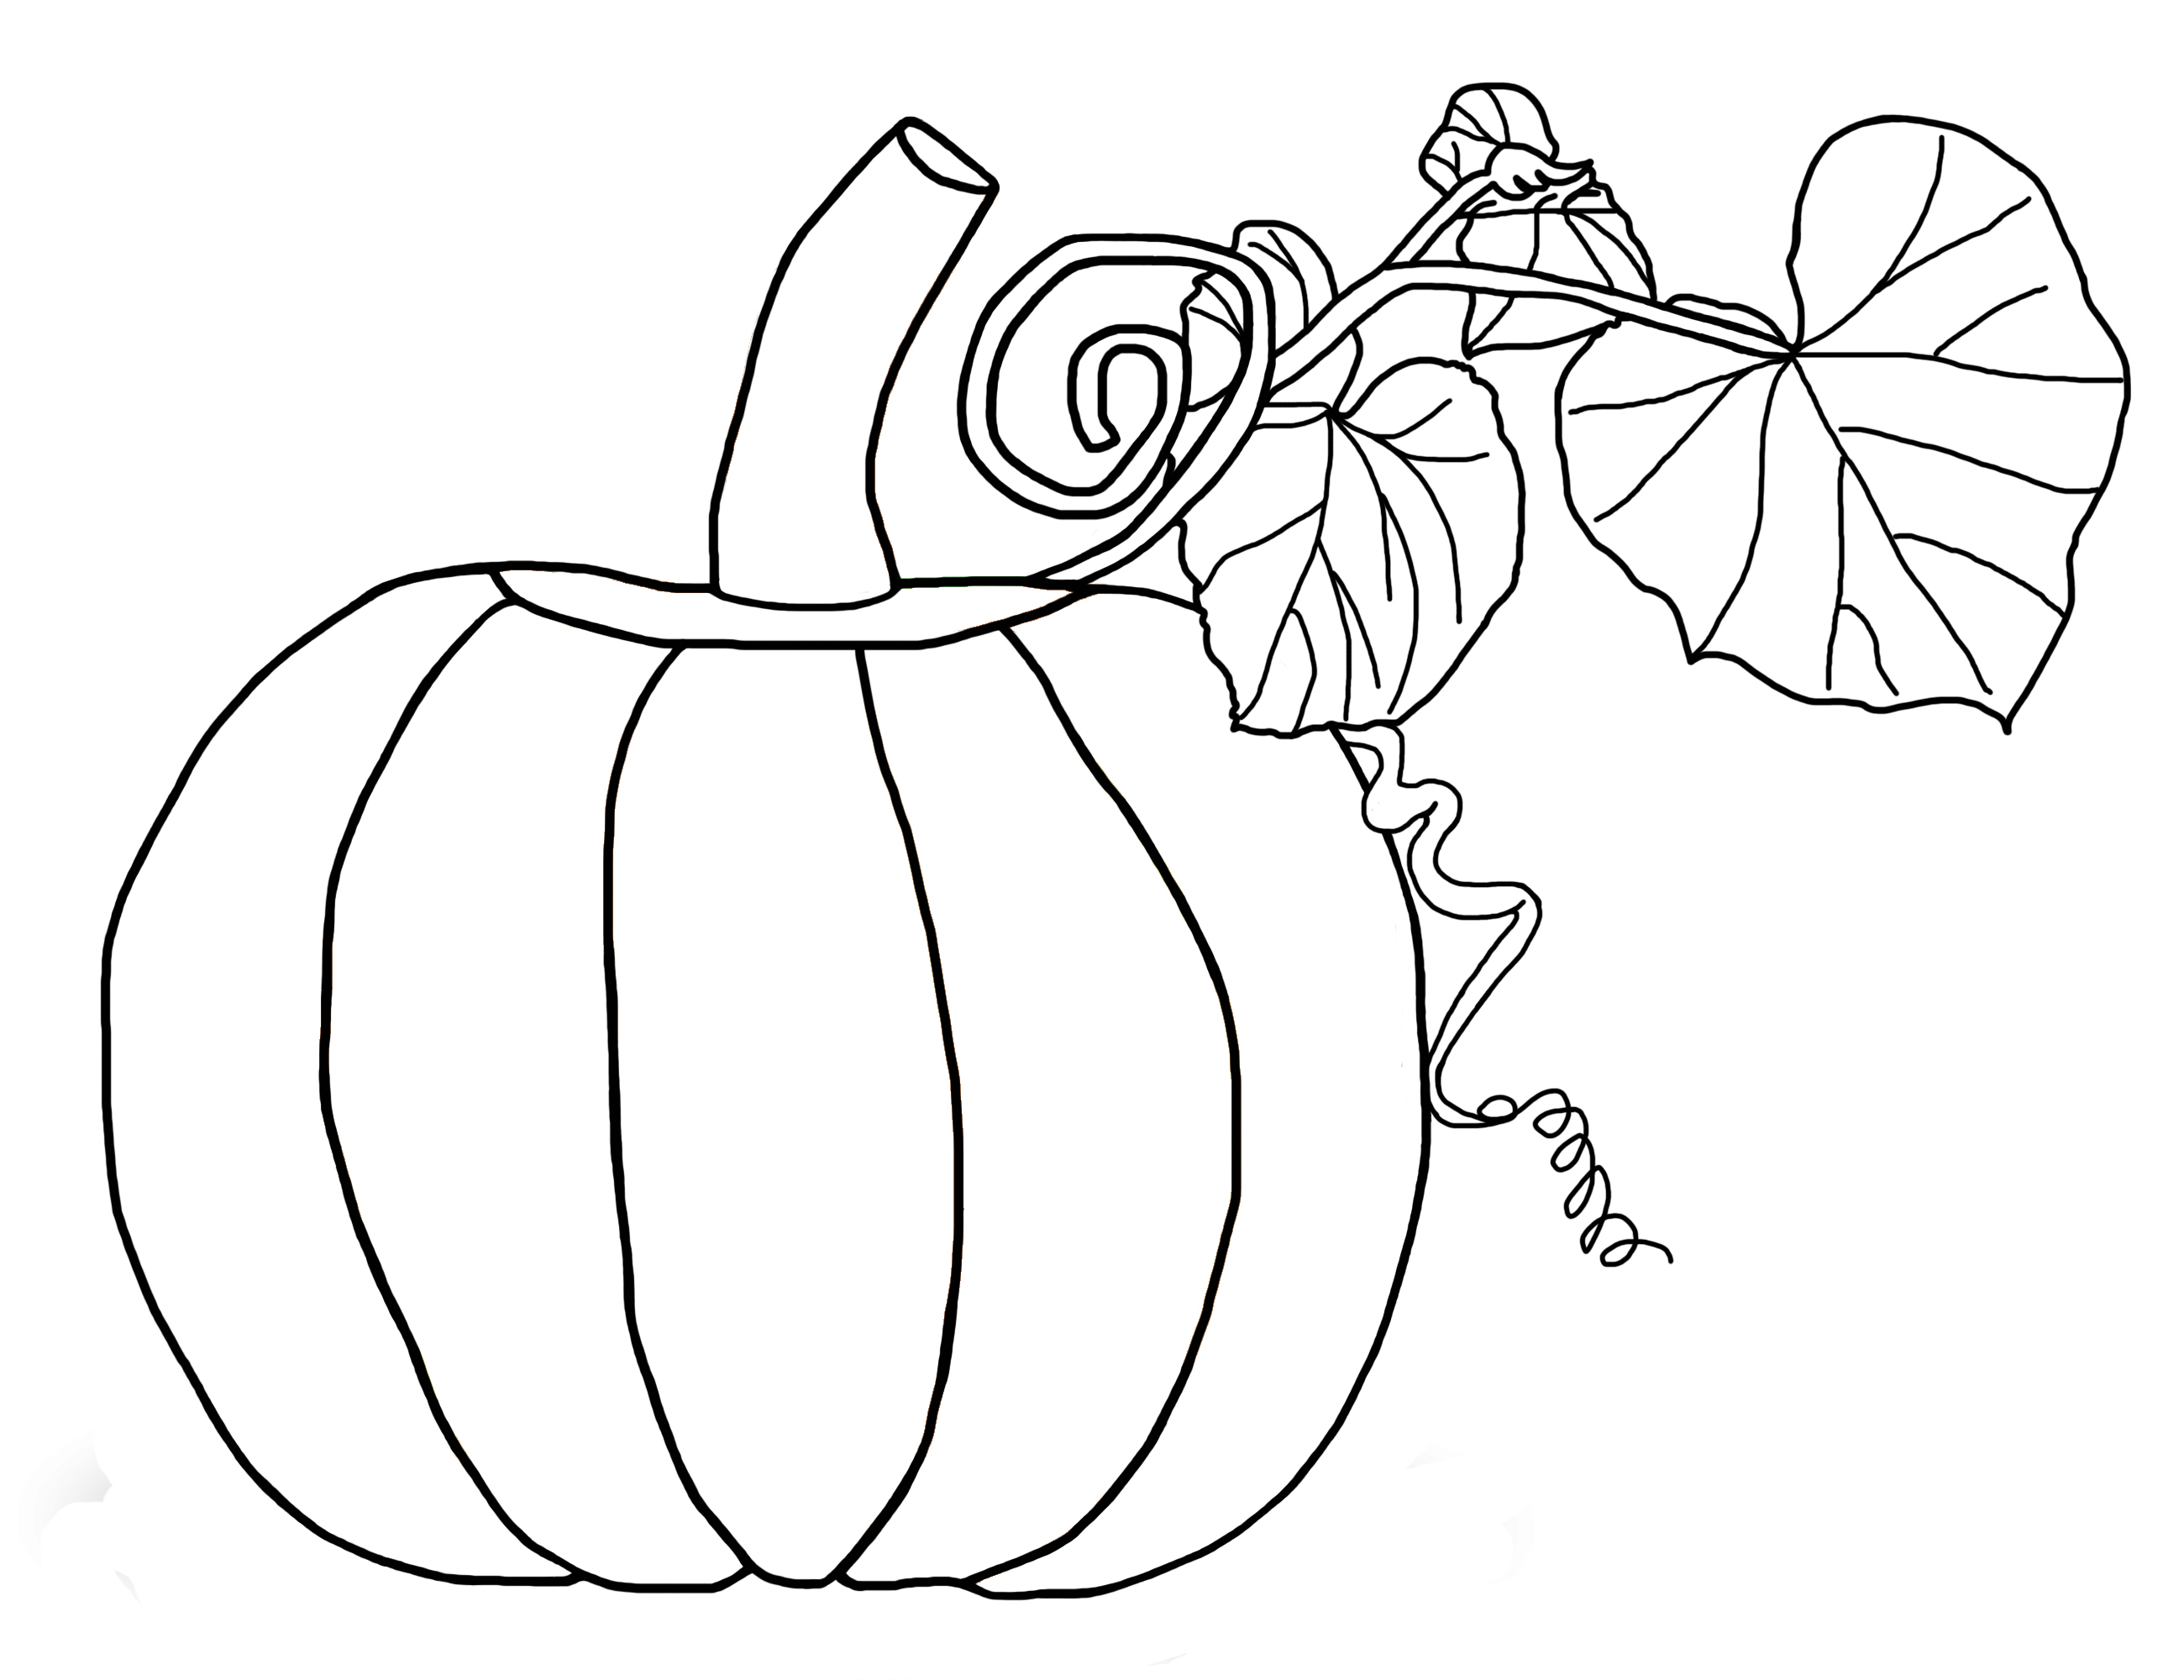 Pumpkin Leaf Drawing at GetDrawings | Free download